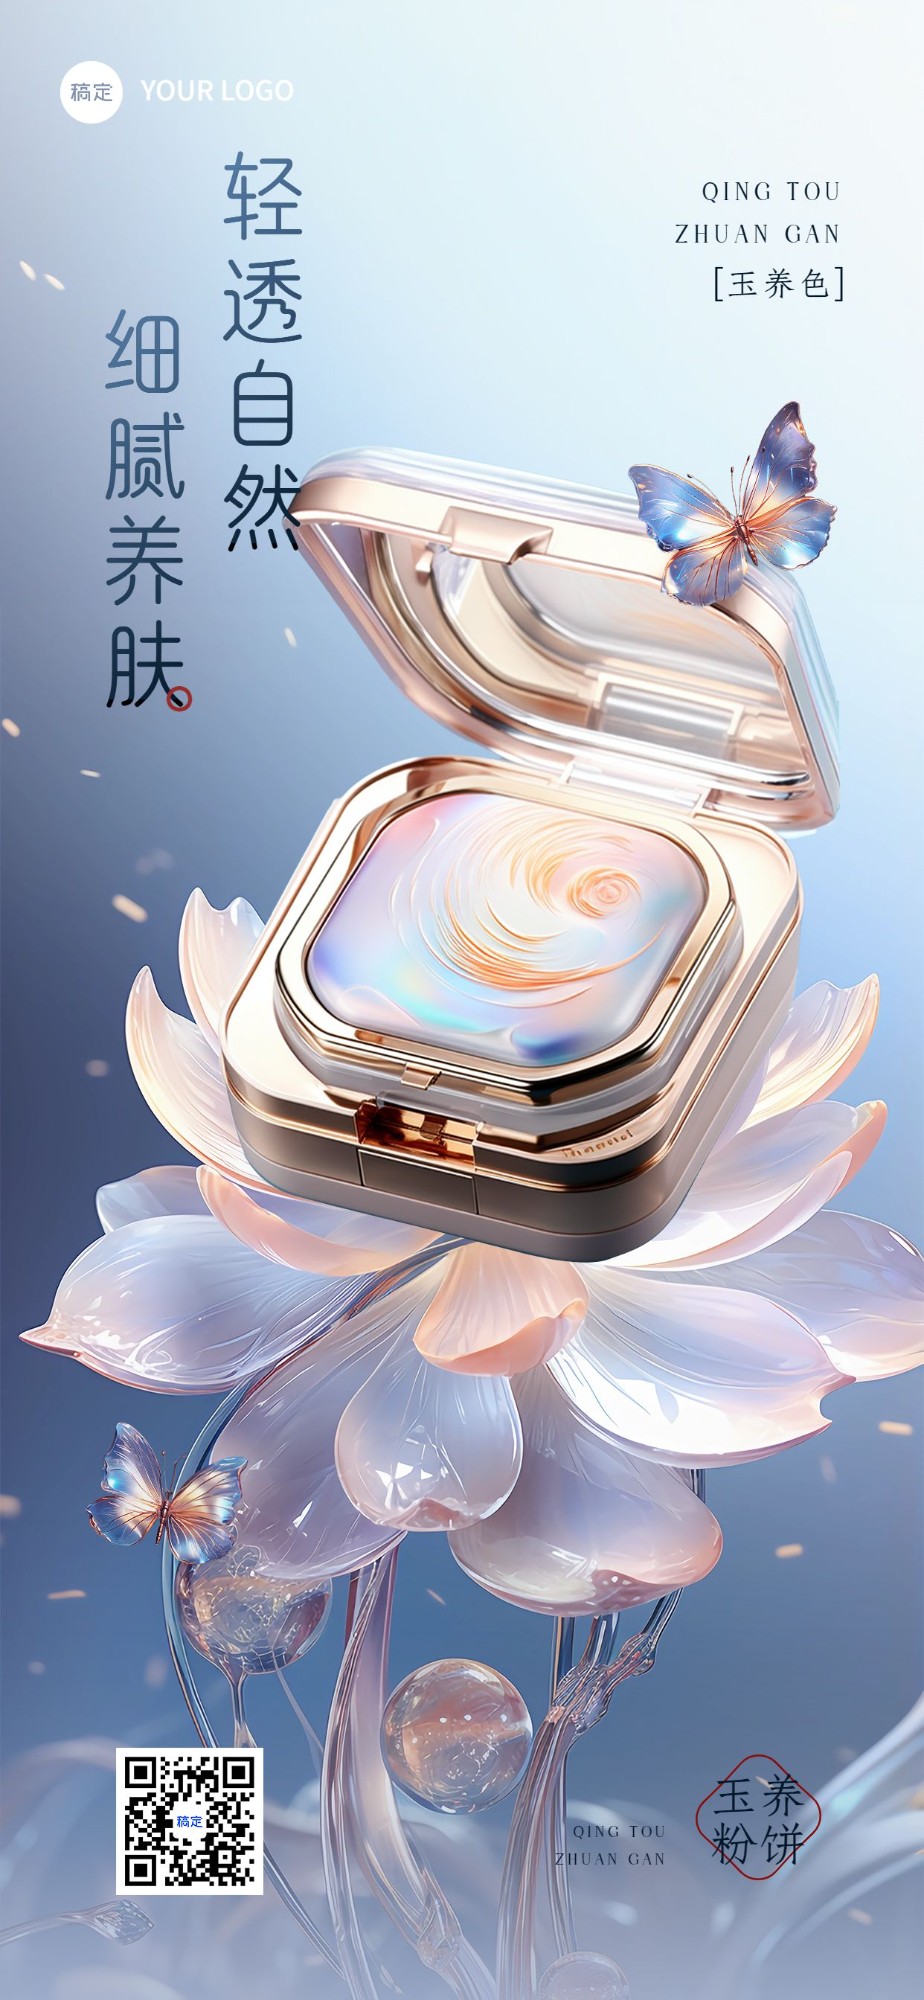 美容美妆产品营销现代中国风实景合成全屏竖版海报预览效果